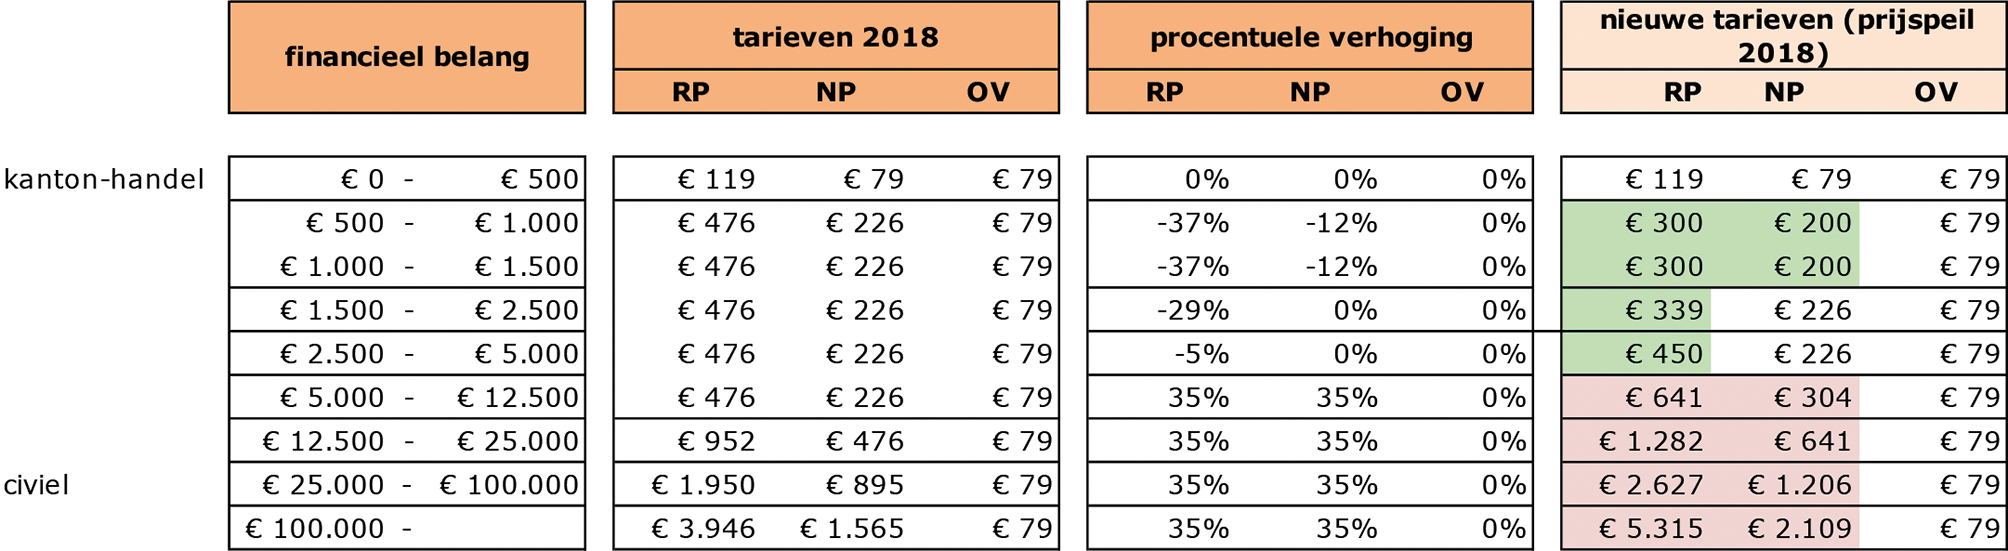 Variant II. Toegevoegd ten opzichte van variant I: twee extra categorieën (€ 1.500 – € 2.500 en € 2.500 – € 5.000) en tarief RP en NP dichter bij elkaar (tot € 5.000)